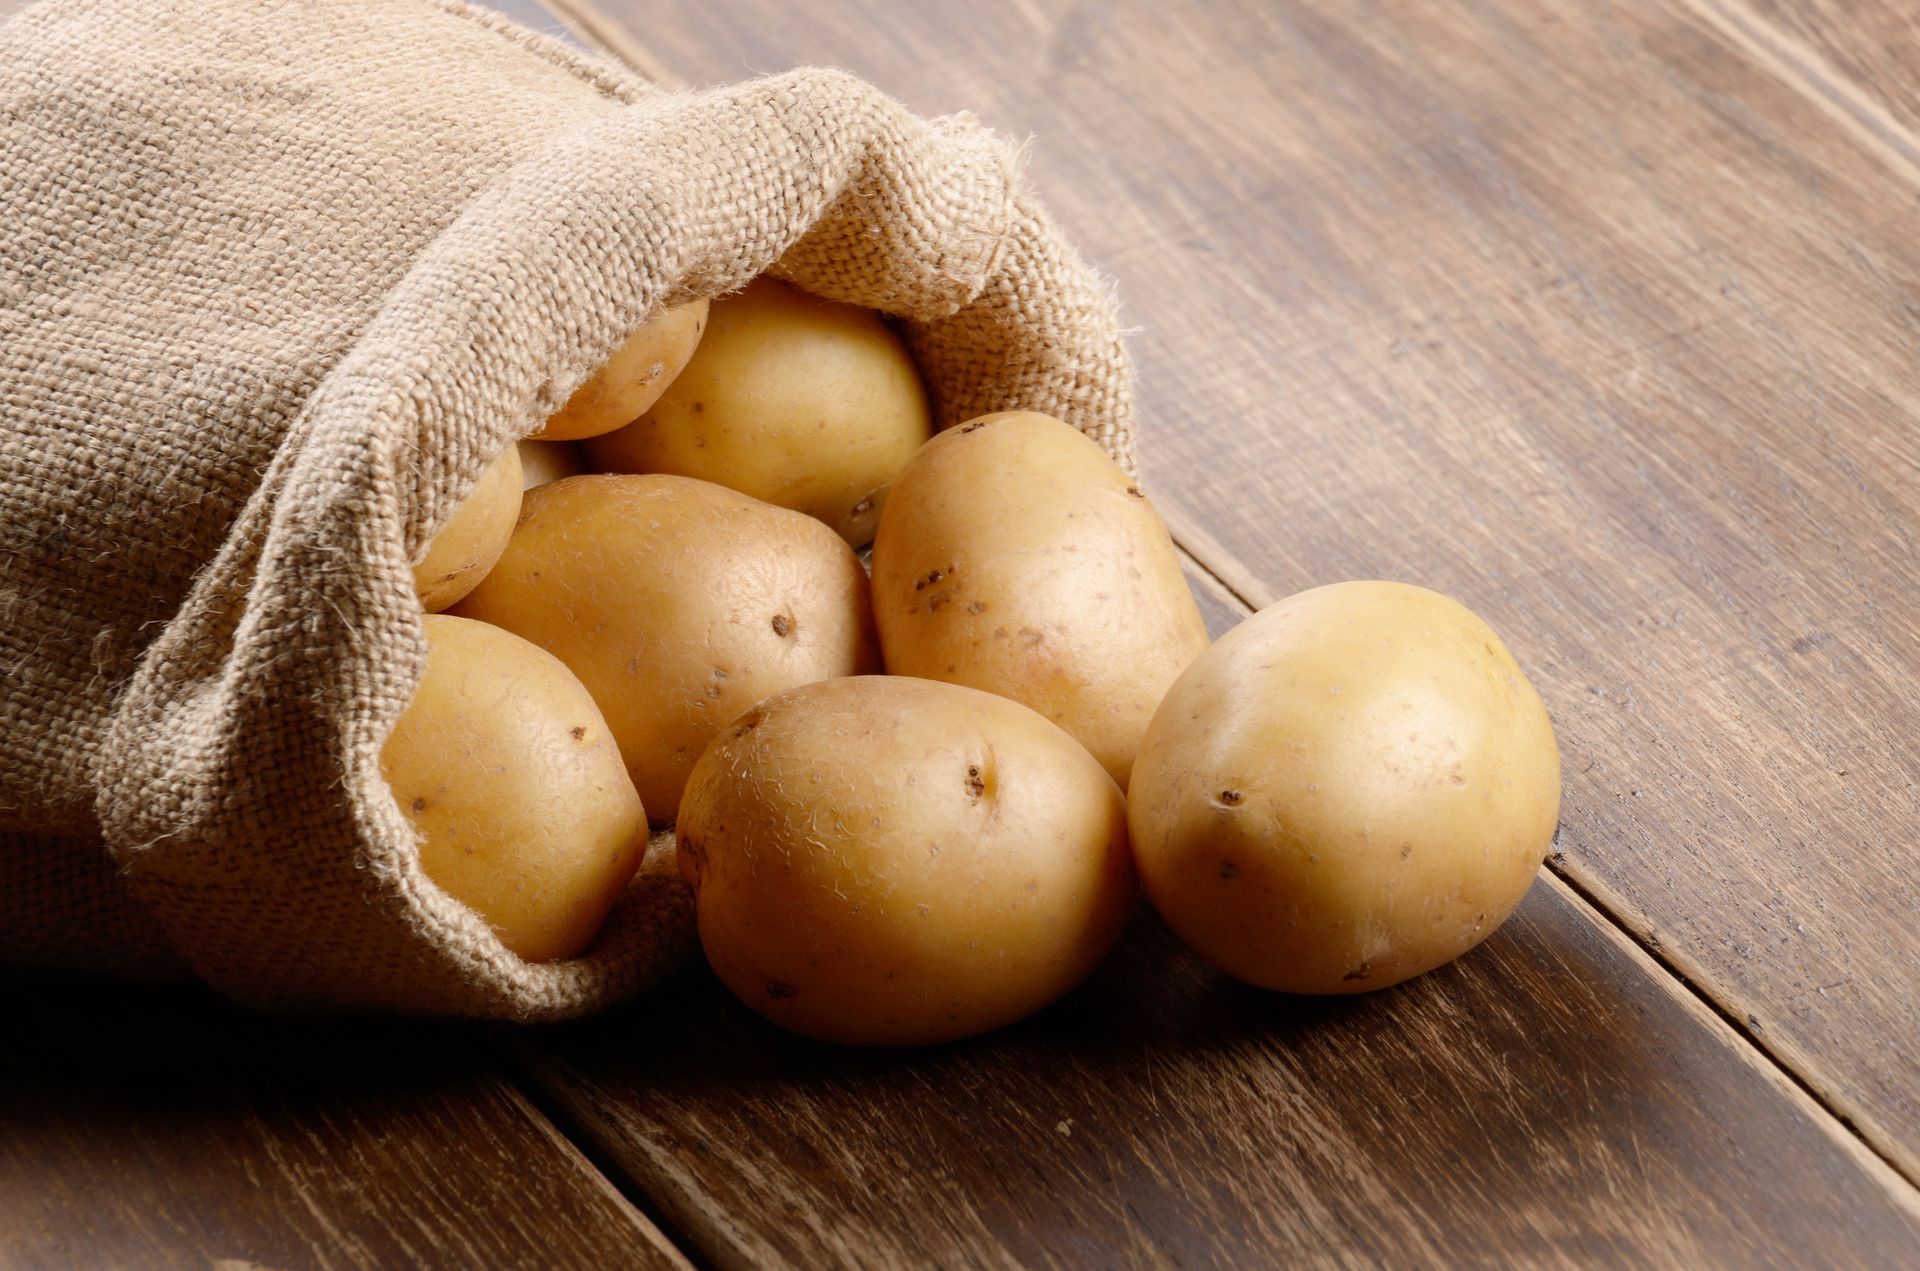 Burlap Bags for Growing Potatoes